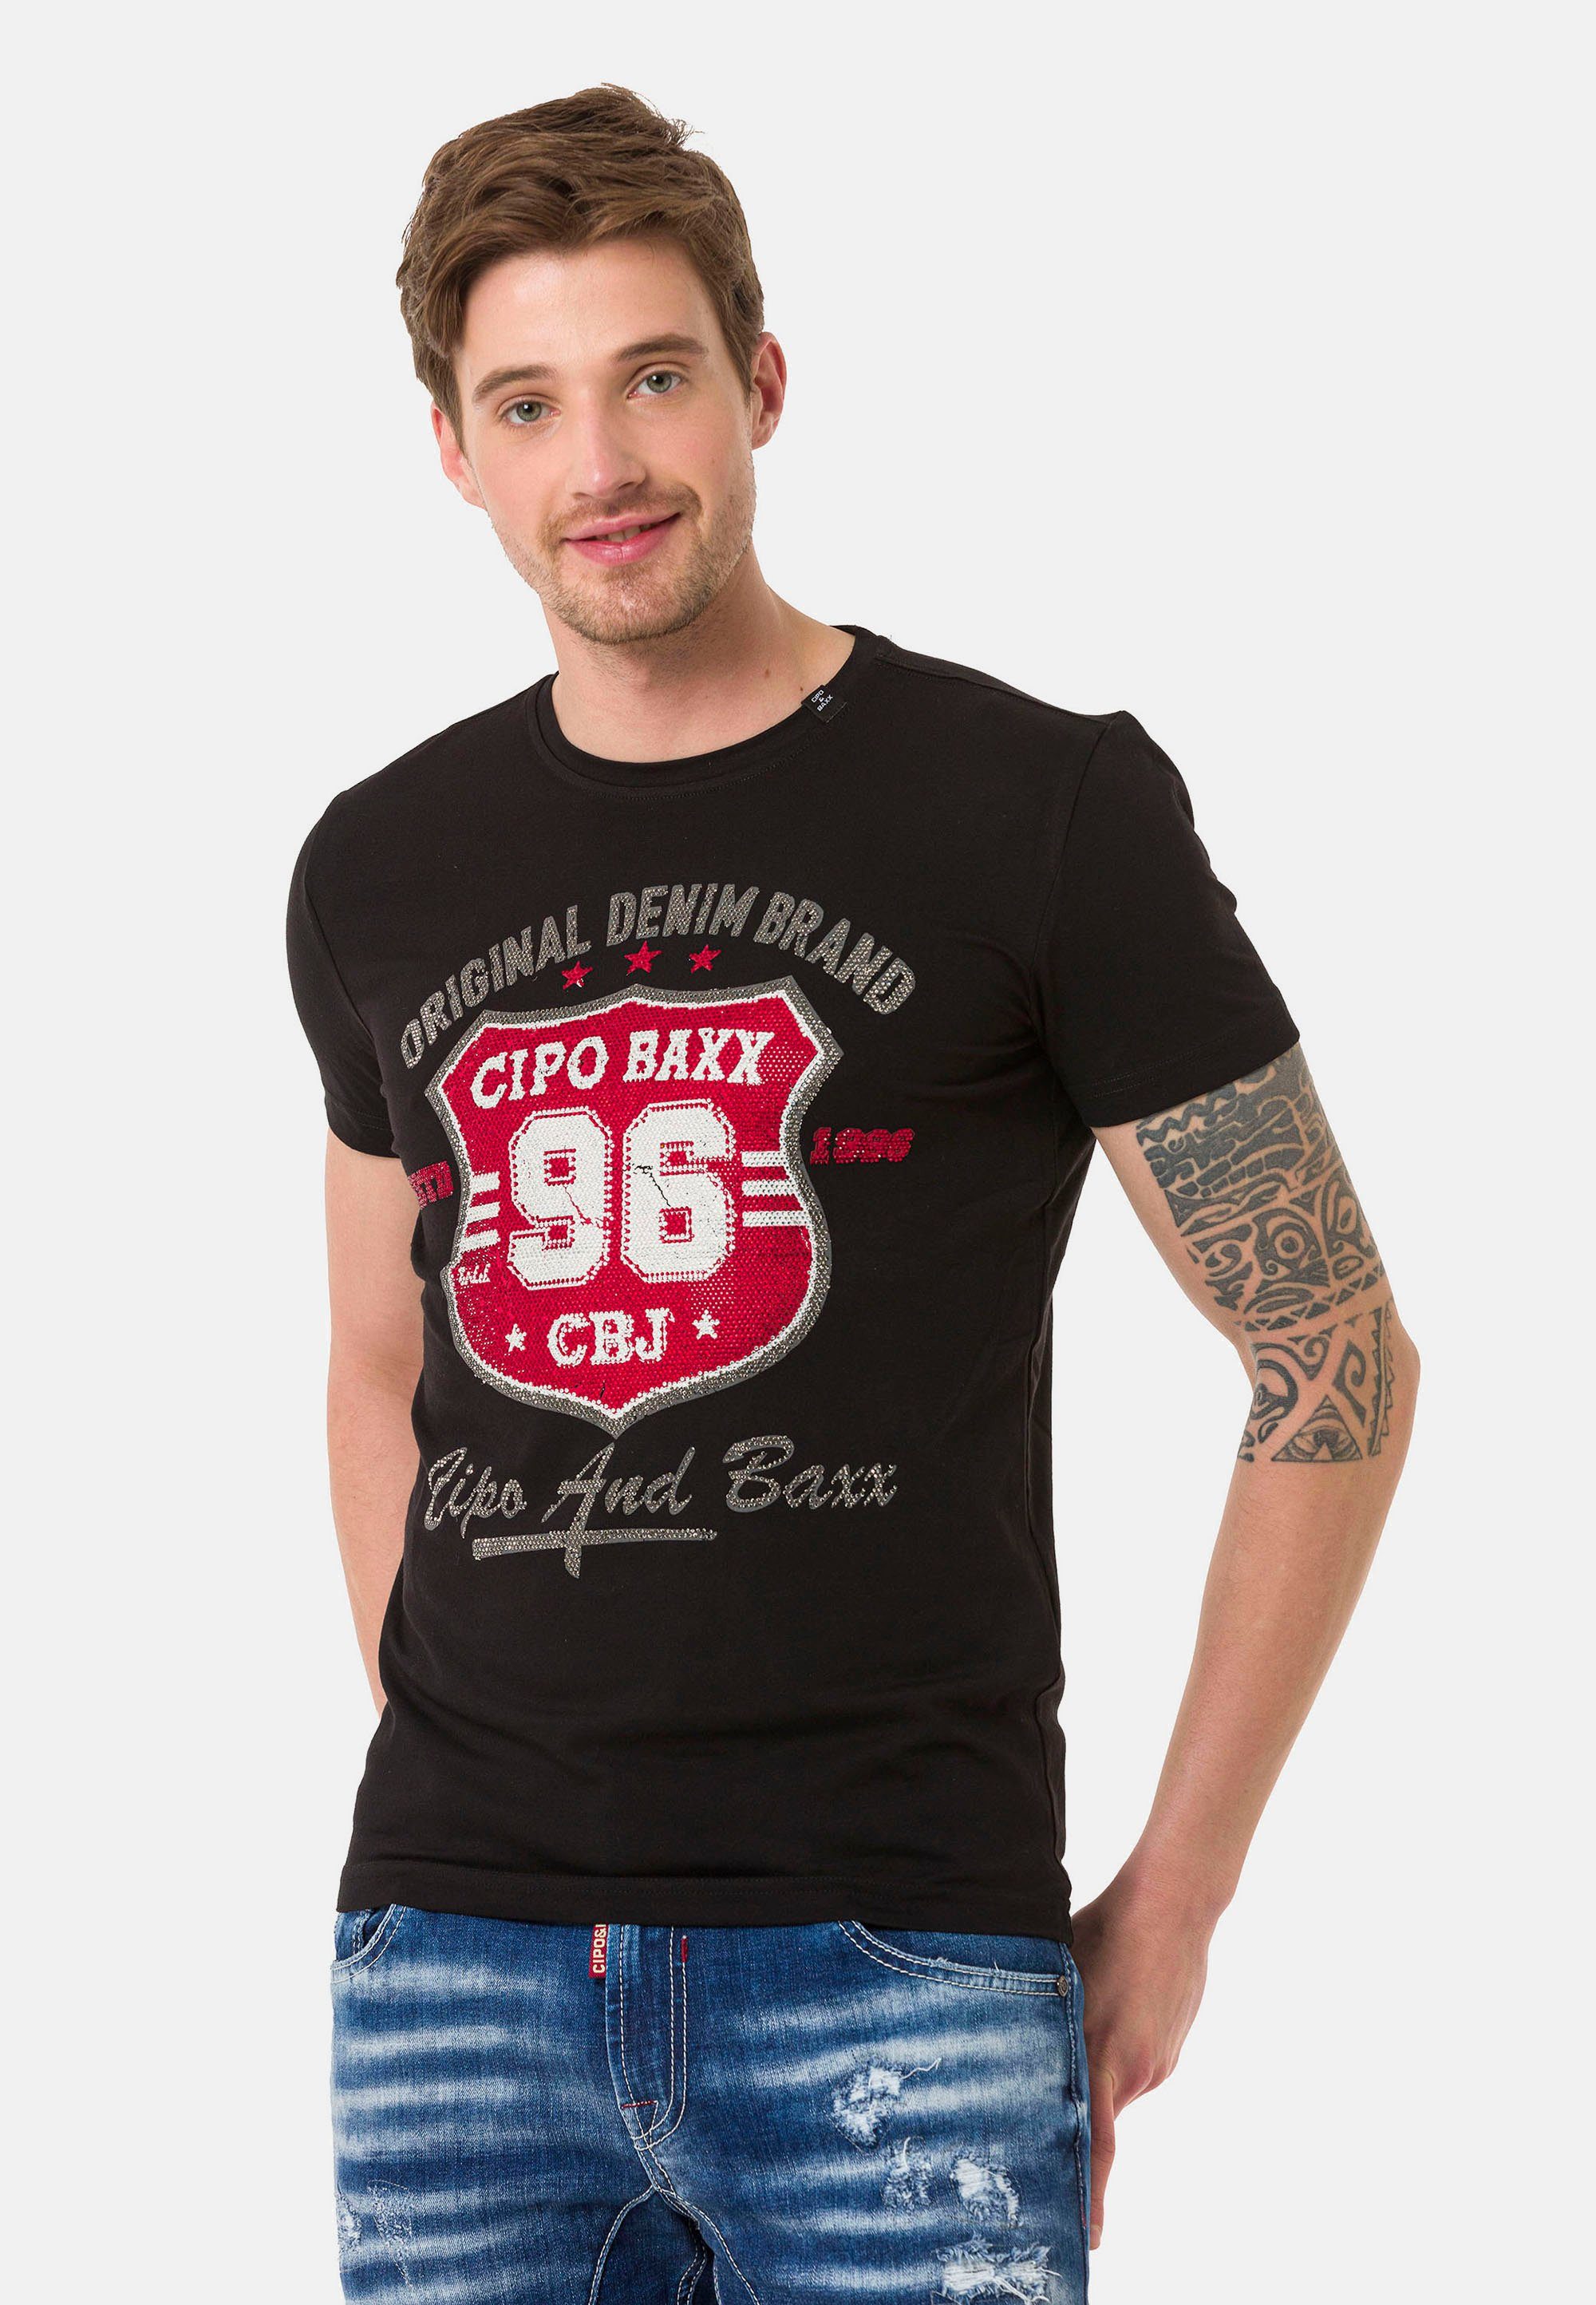 Cipo & Baxx T-Shirt schwarz coolem Frontprint mit